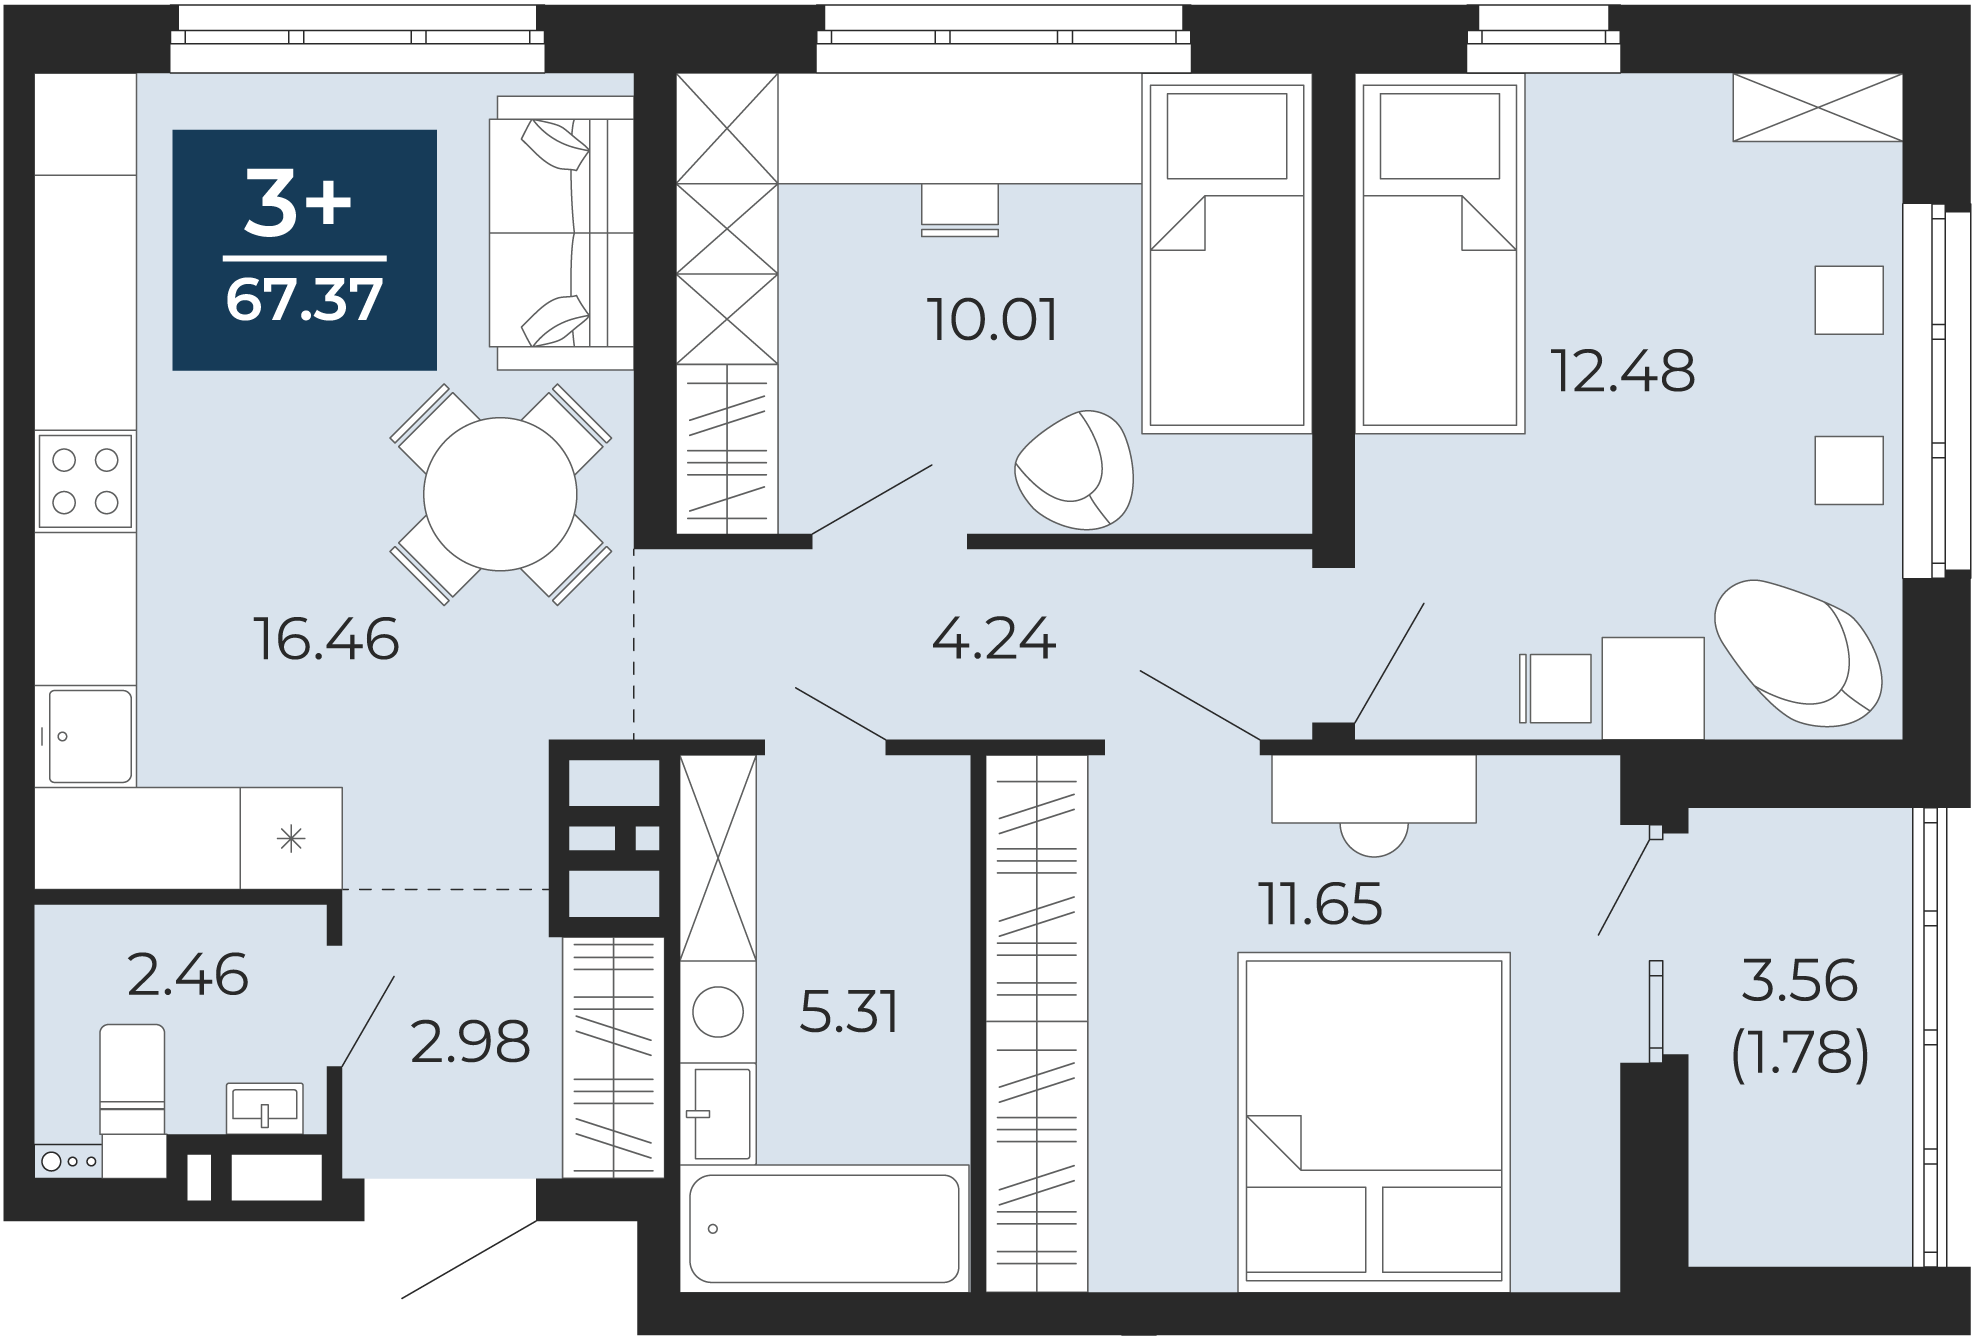 Квартира № 223, 3-комнатная, 67.37 кв. м, 4 этаж